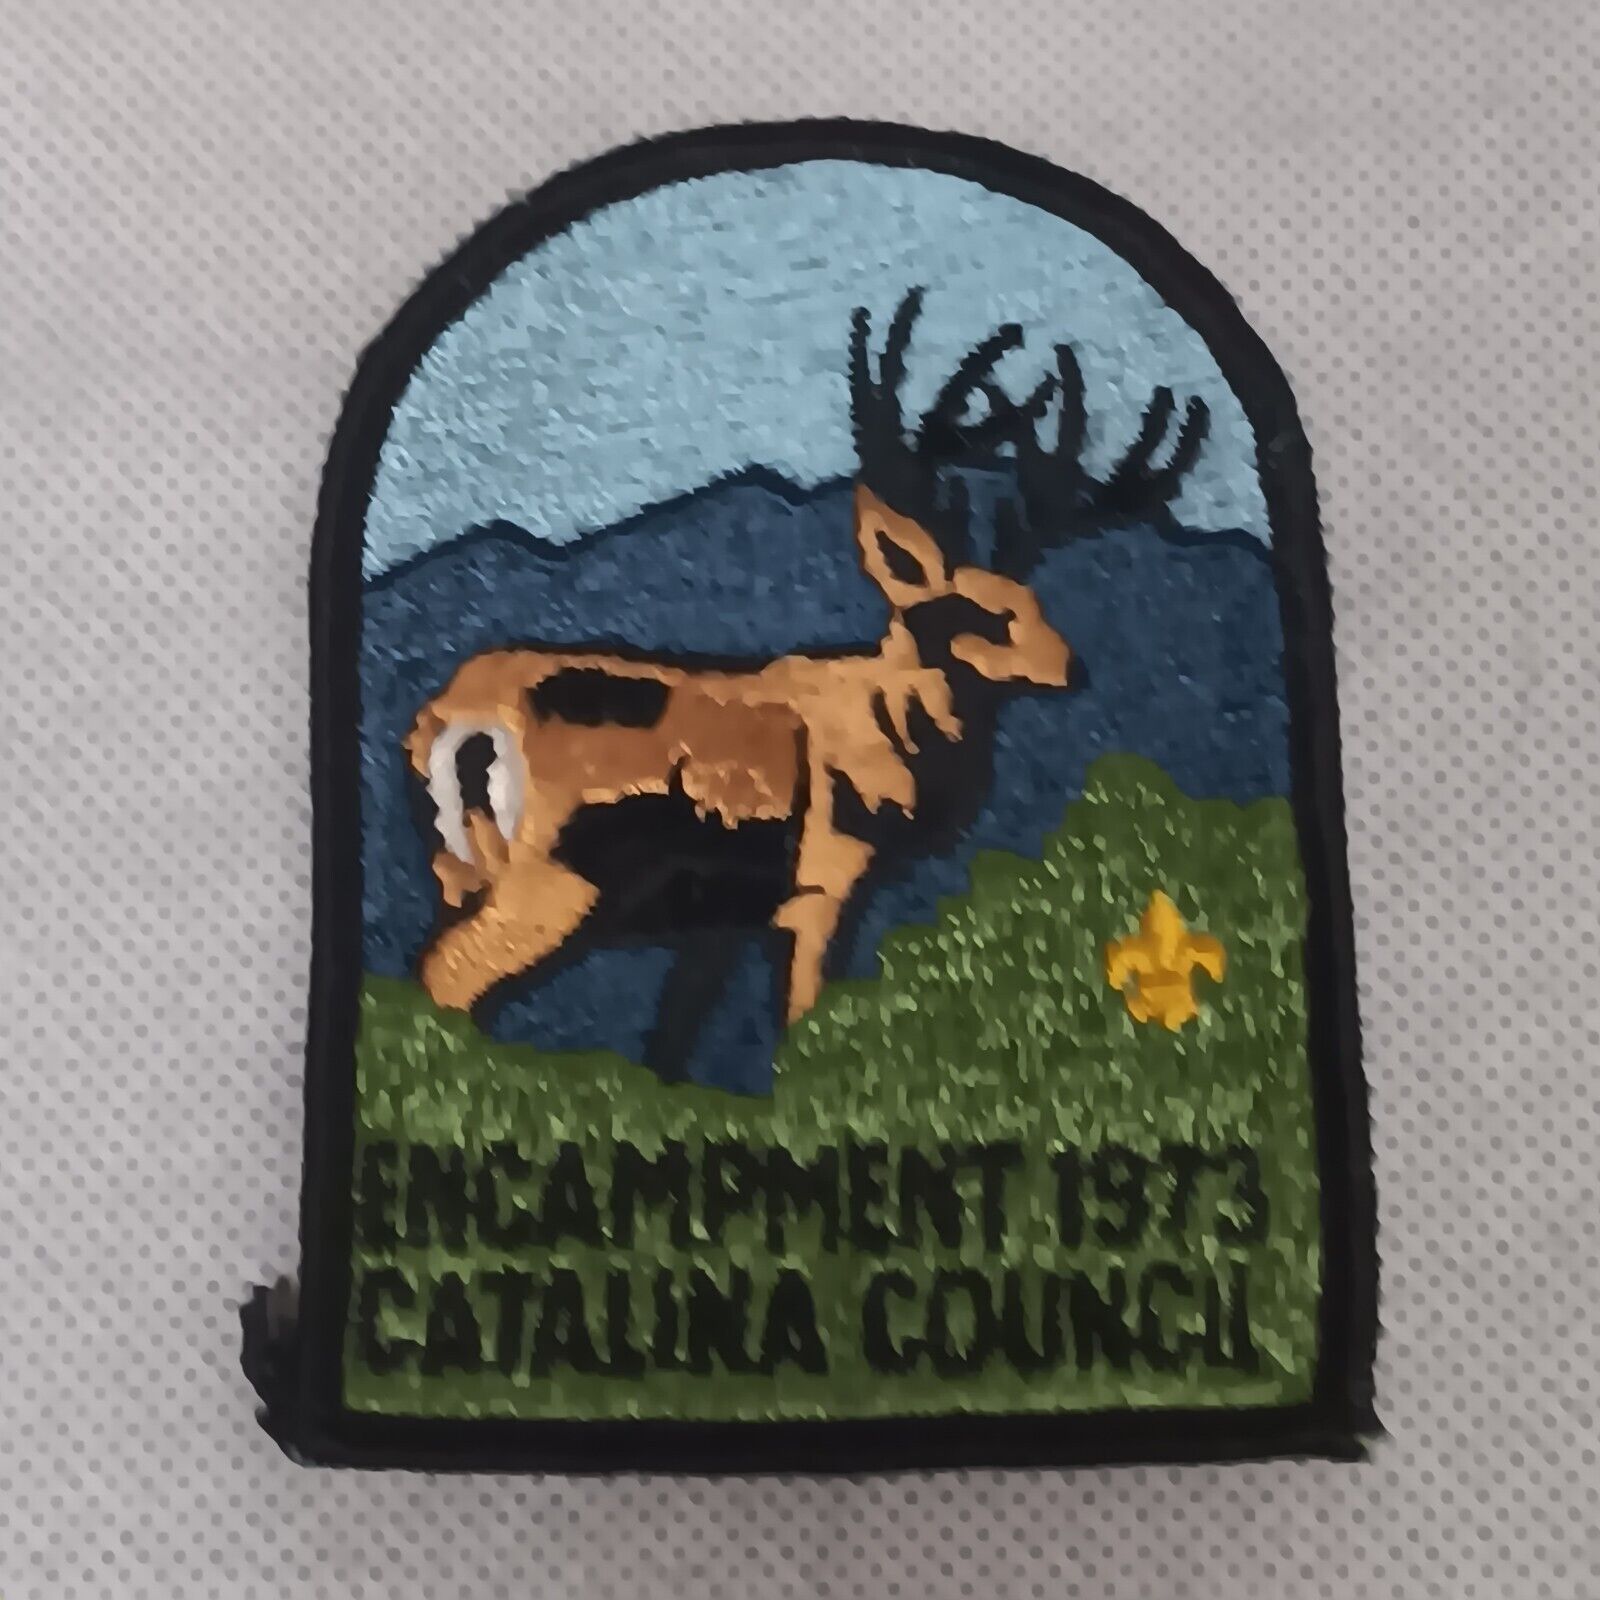 Boy Scouts Patch 1973 Encampment Catalina Council